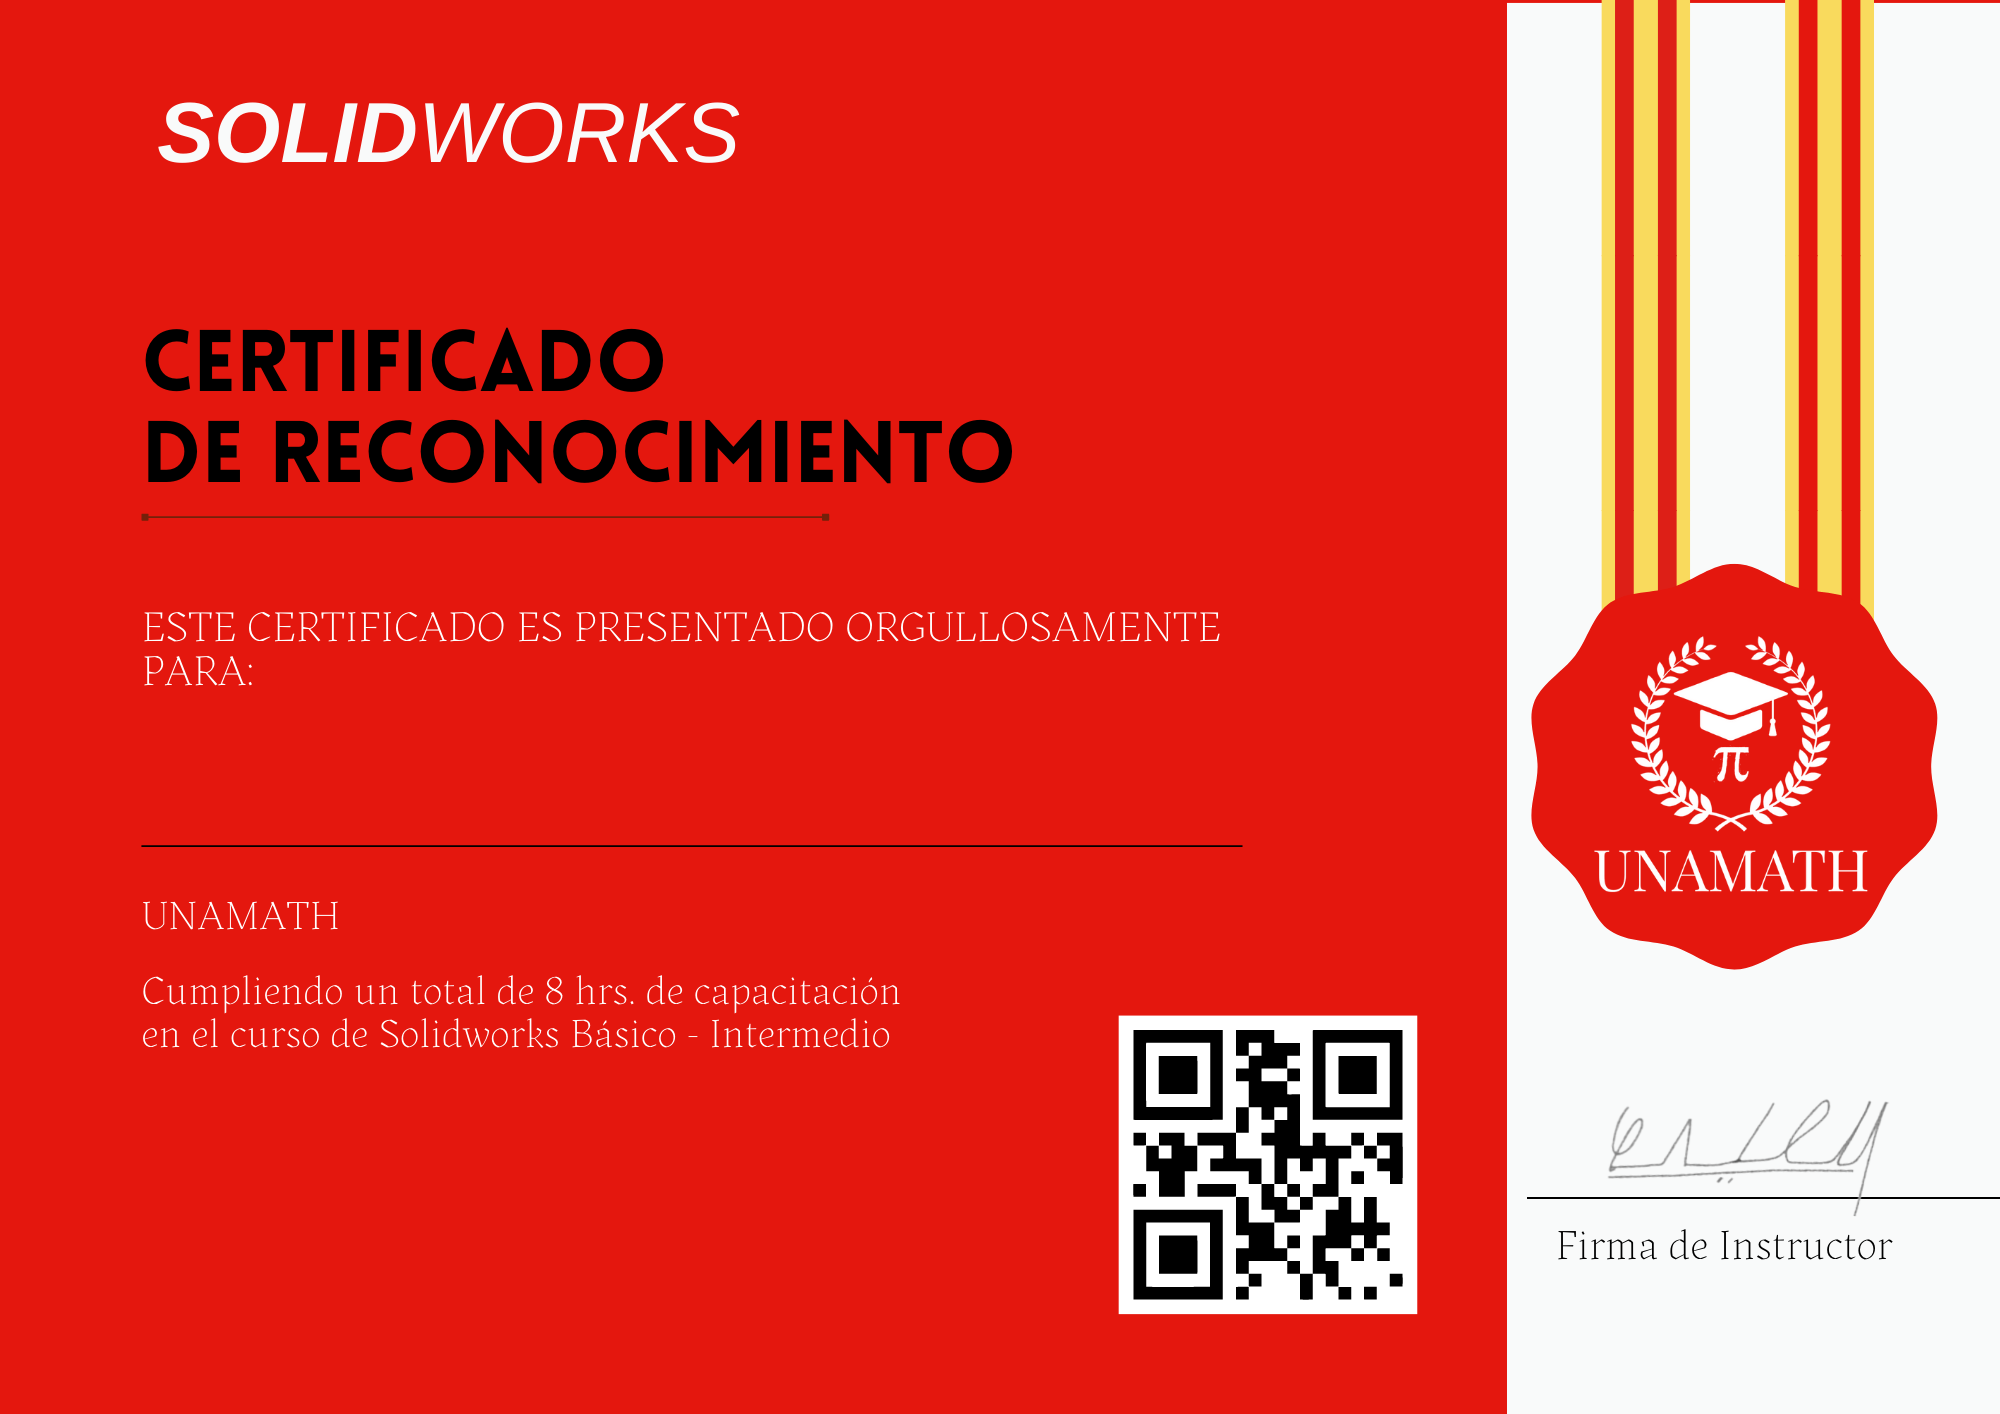 Certificado Solidworks Básico (297 × 210 mm) (1).png